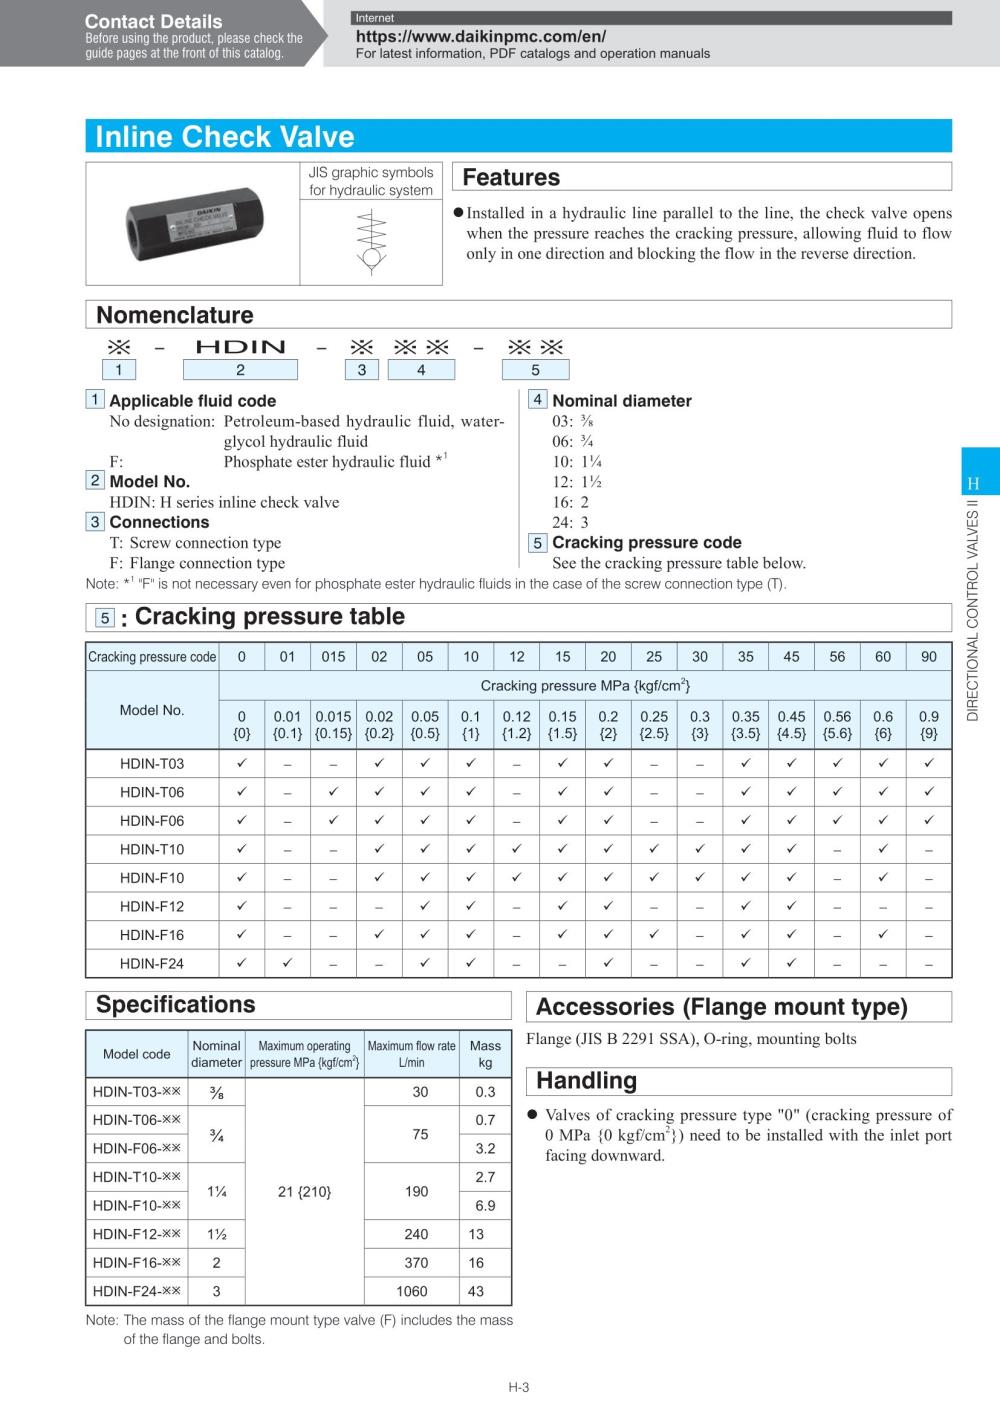 DAIKIN Inline Check Valve HDIN-F16 Series